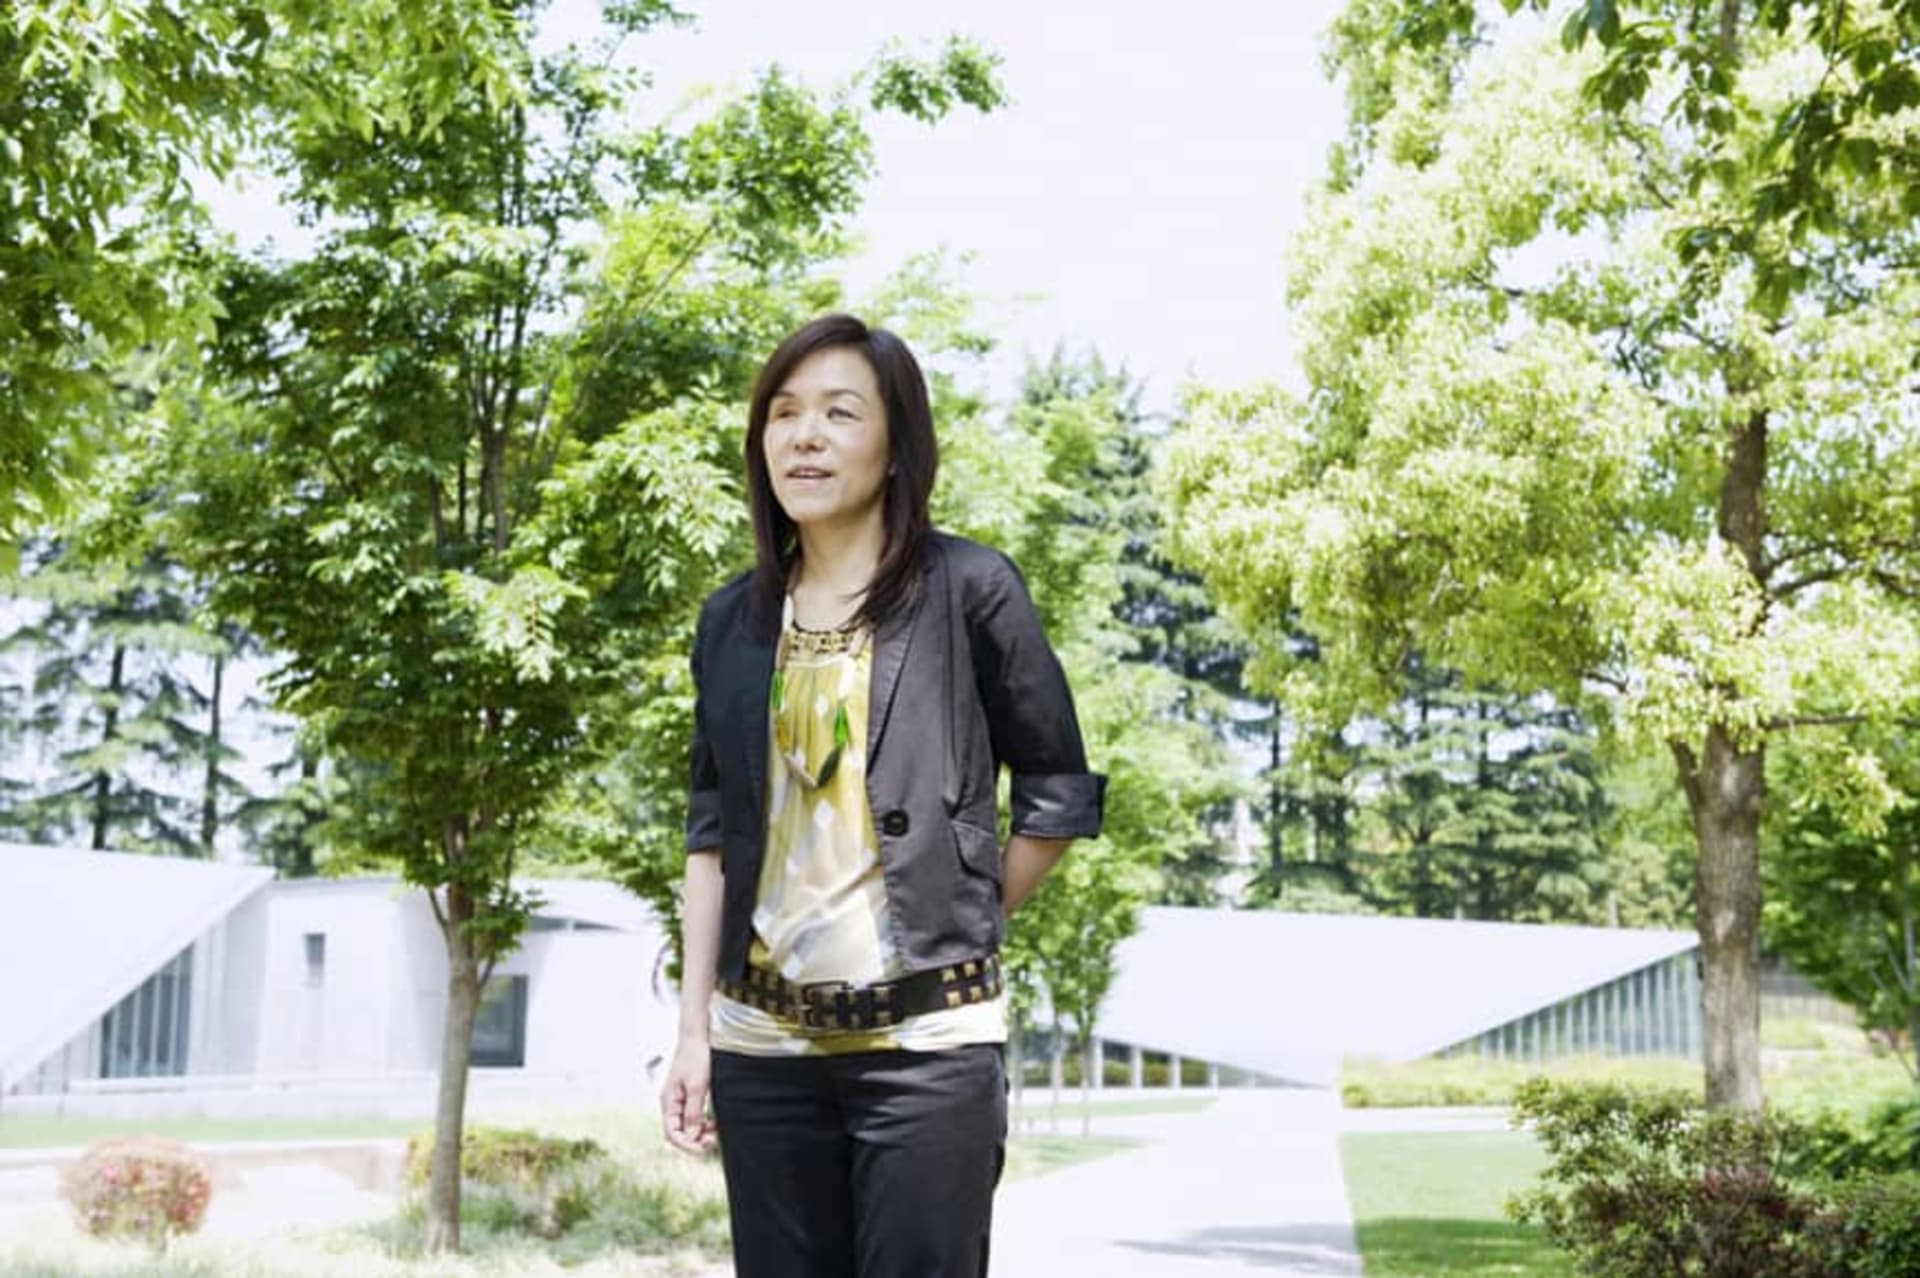 Chieko Asakawa